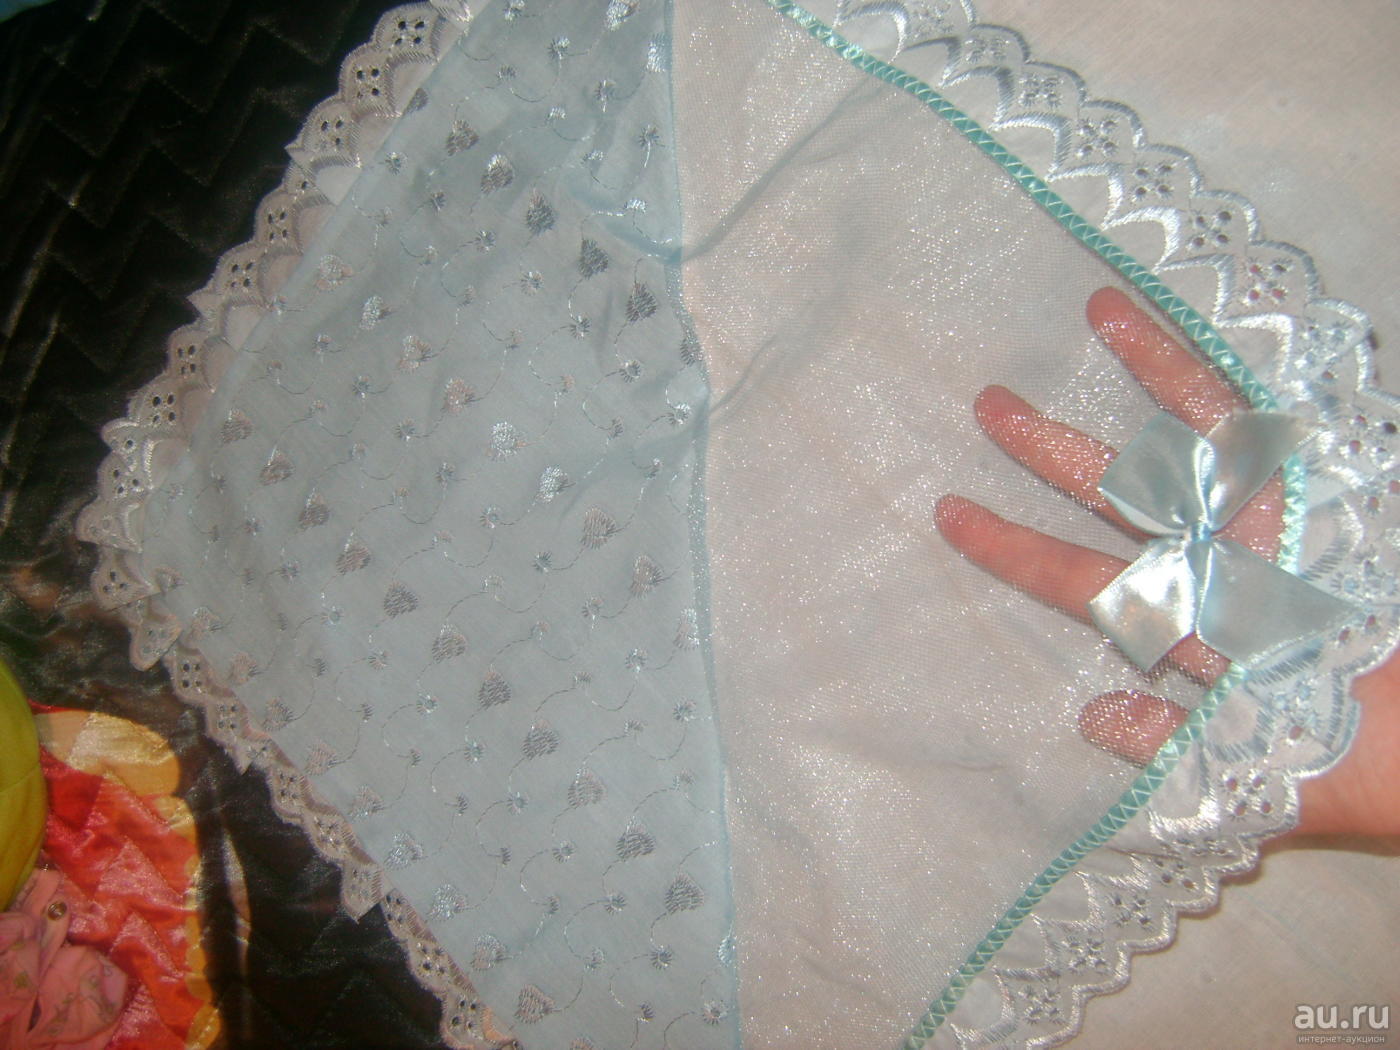 Дет­ское оде­я­ло сво­и­ми рука­ми : вари­ан­ты. как сде­лать оде­я­ло для ново­рож­ден­но­го, кон­верт на выпис­ку сво­и­ми рука­ми